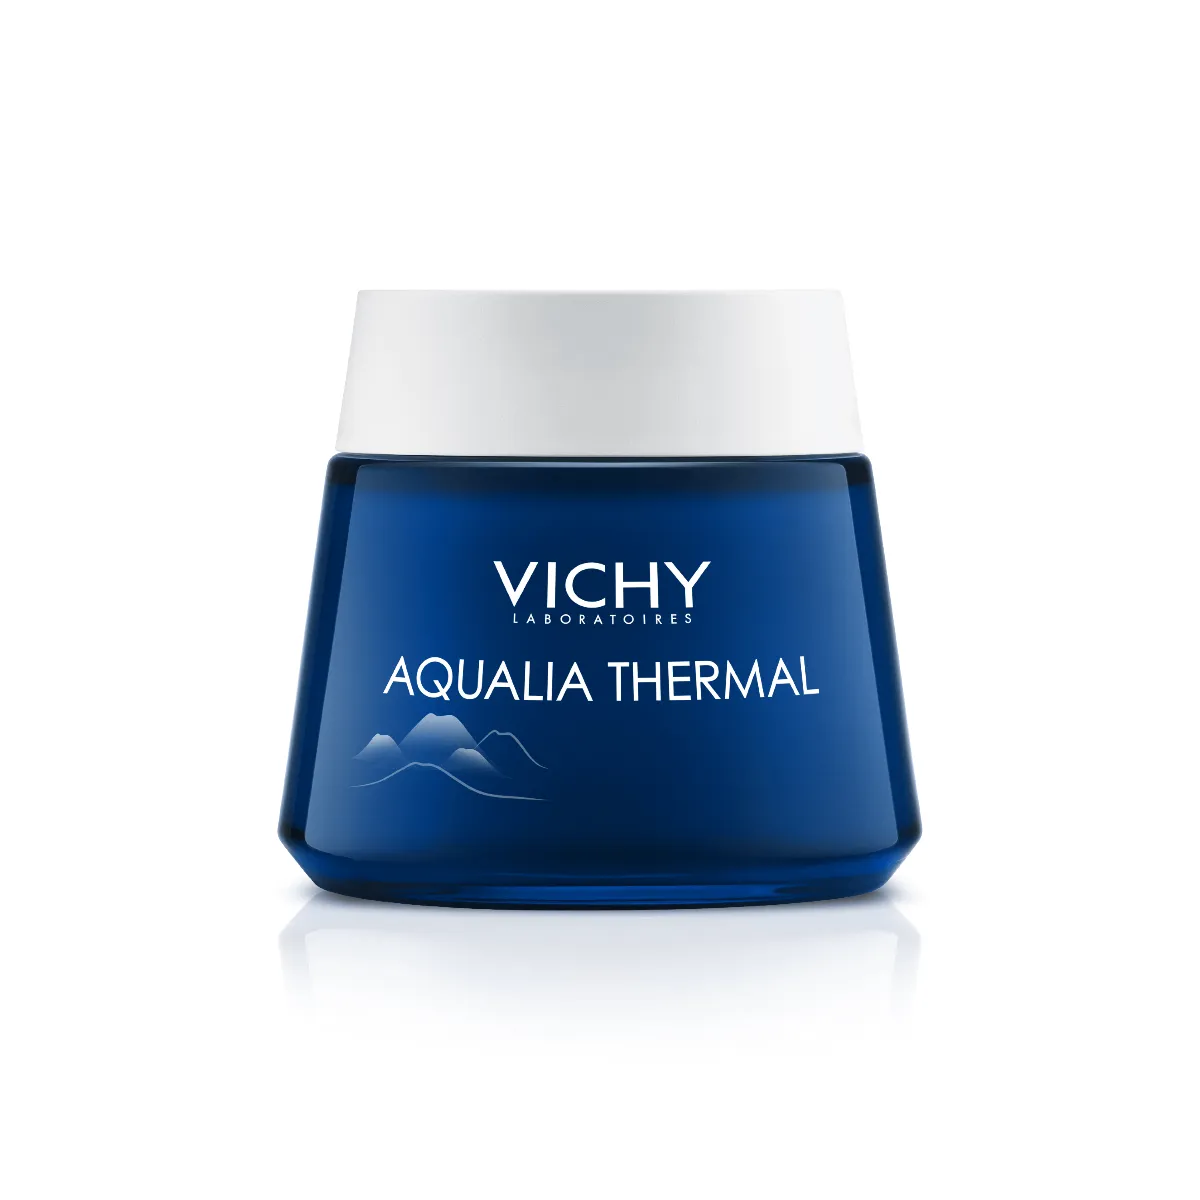 Vichy Aqualia Thermal, spa na noc, nawilżający i regenerujący żel-krem przeciw objawom zmęczenia, 75 ml